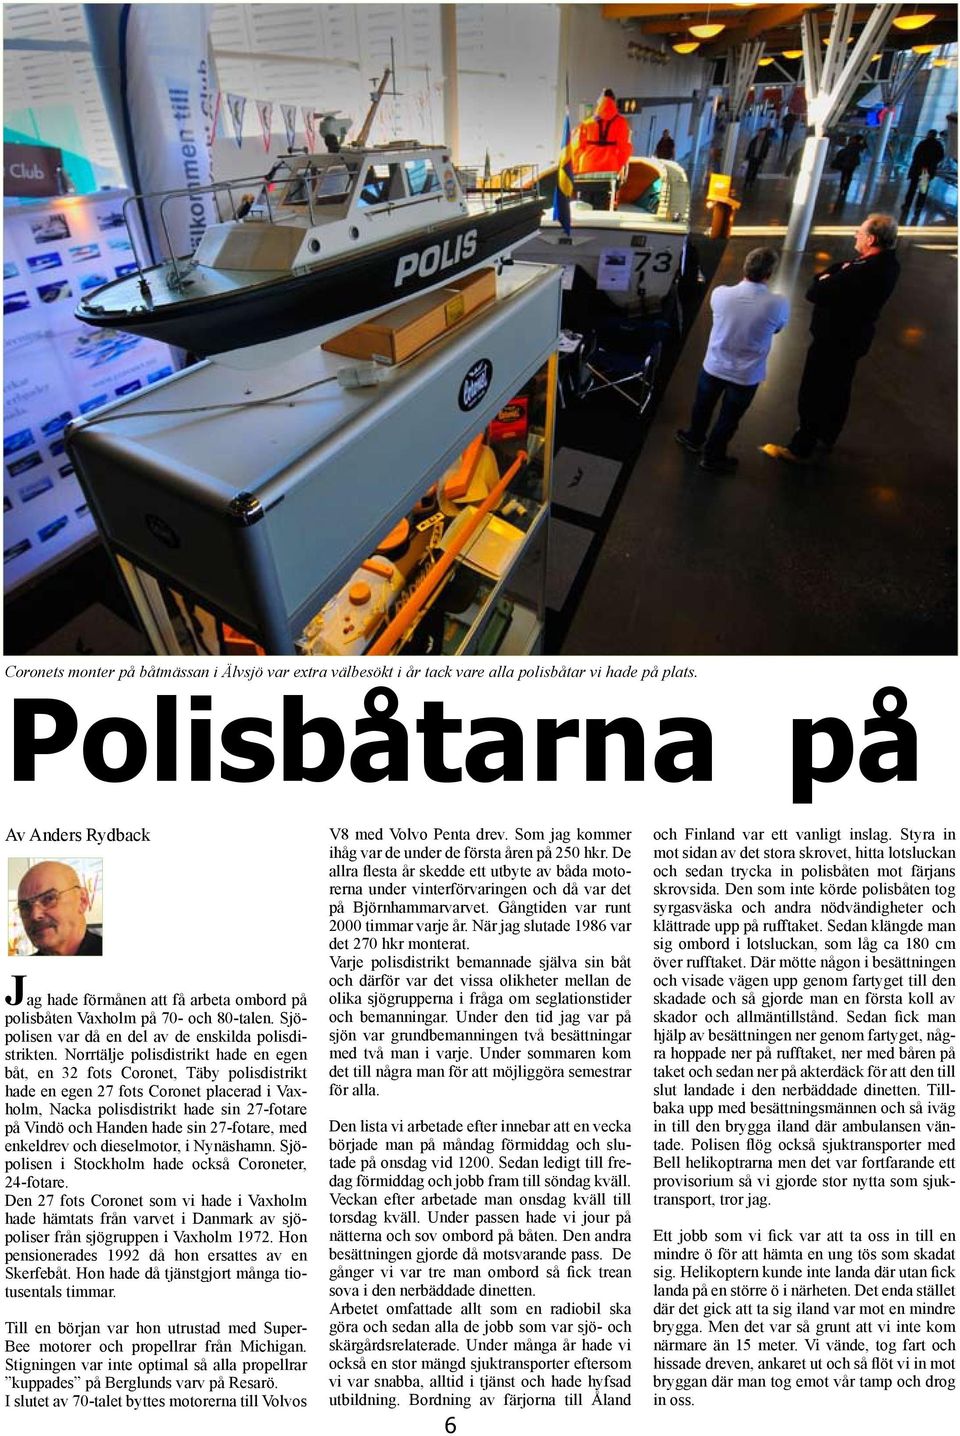 Norrtälje polisdistrikt hade en egen båt, en 32 fots Coronet, Täby polisdistrikt hade en egen 27 fots Coronet placerad i Vaxholm, Nacka polisdistrikt hade sin 27-fotare på Vindö och Handen hade sin